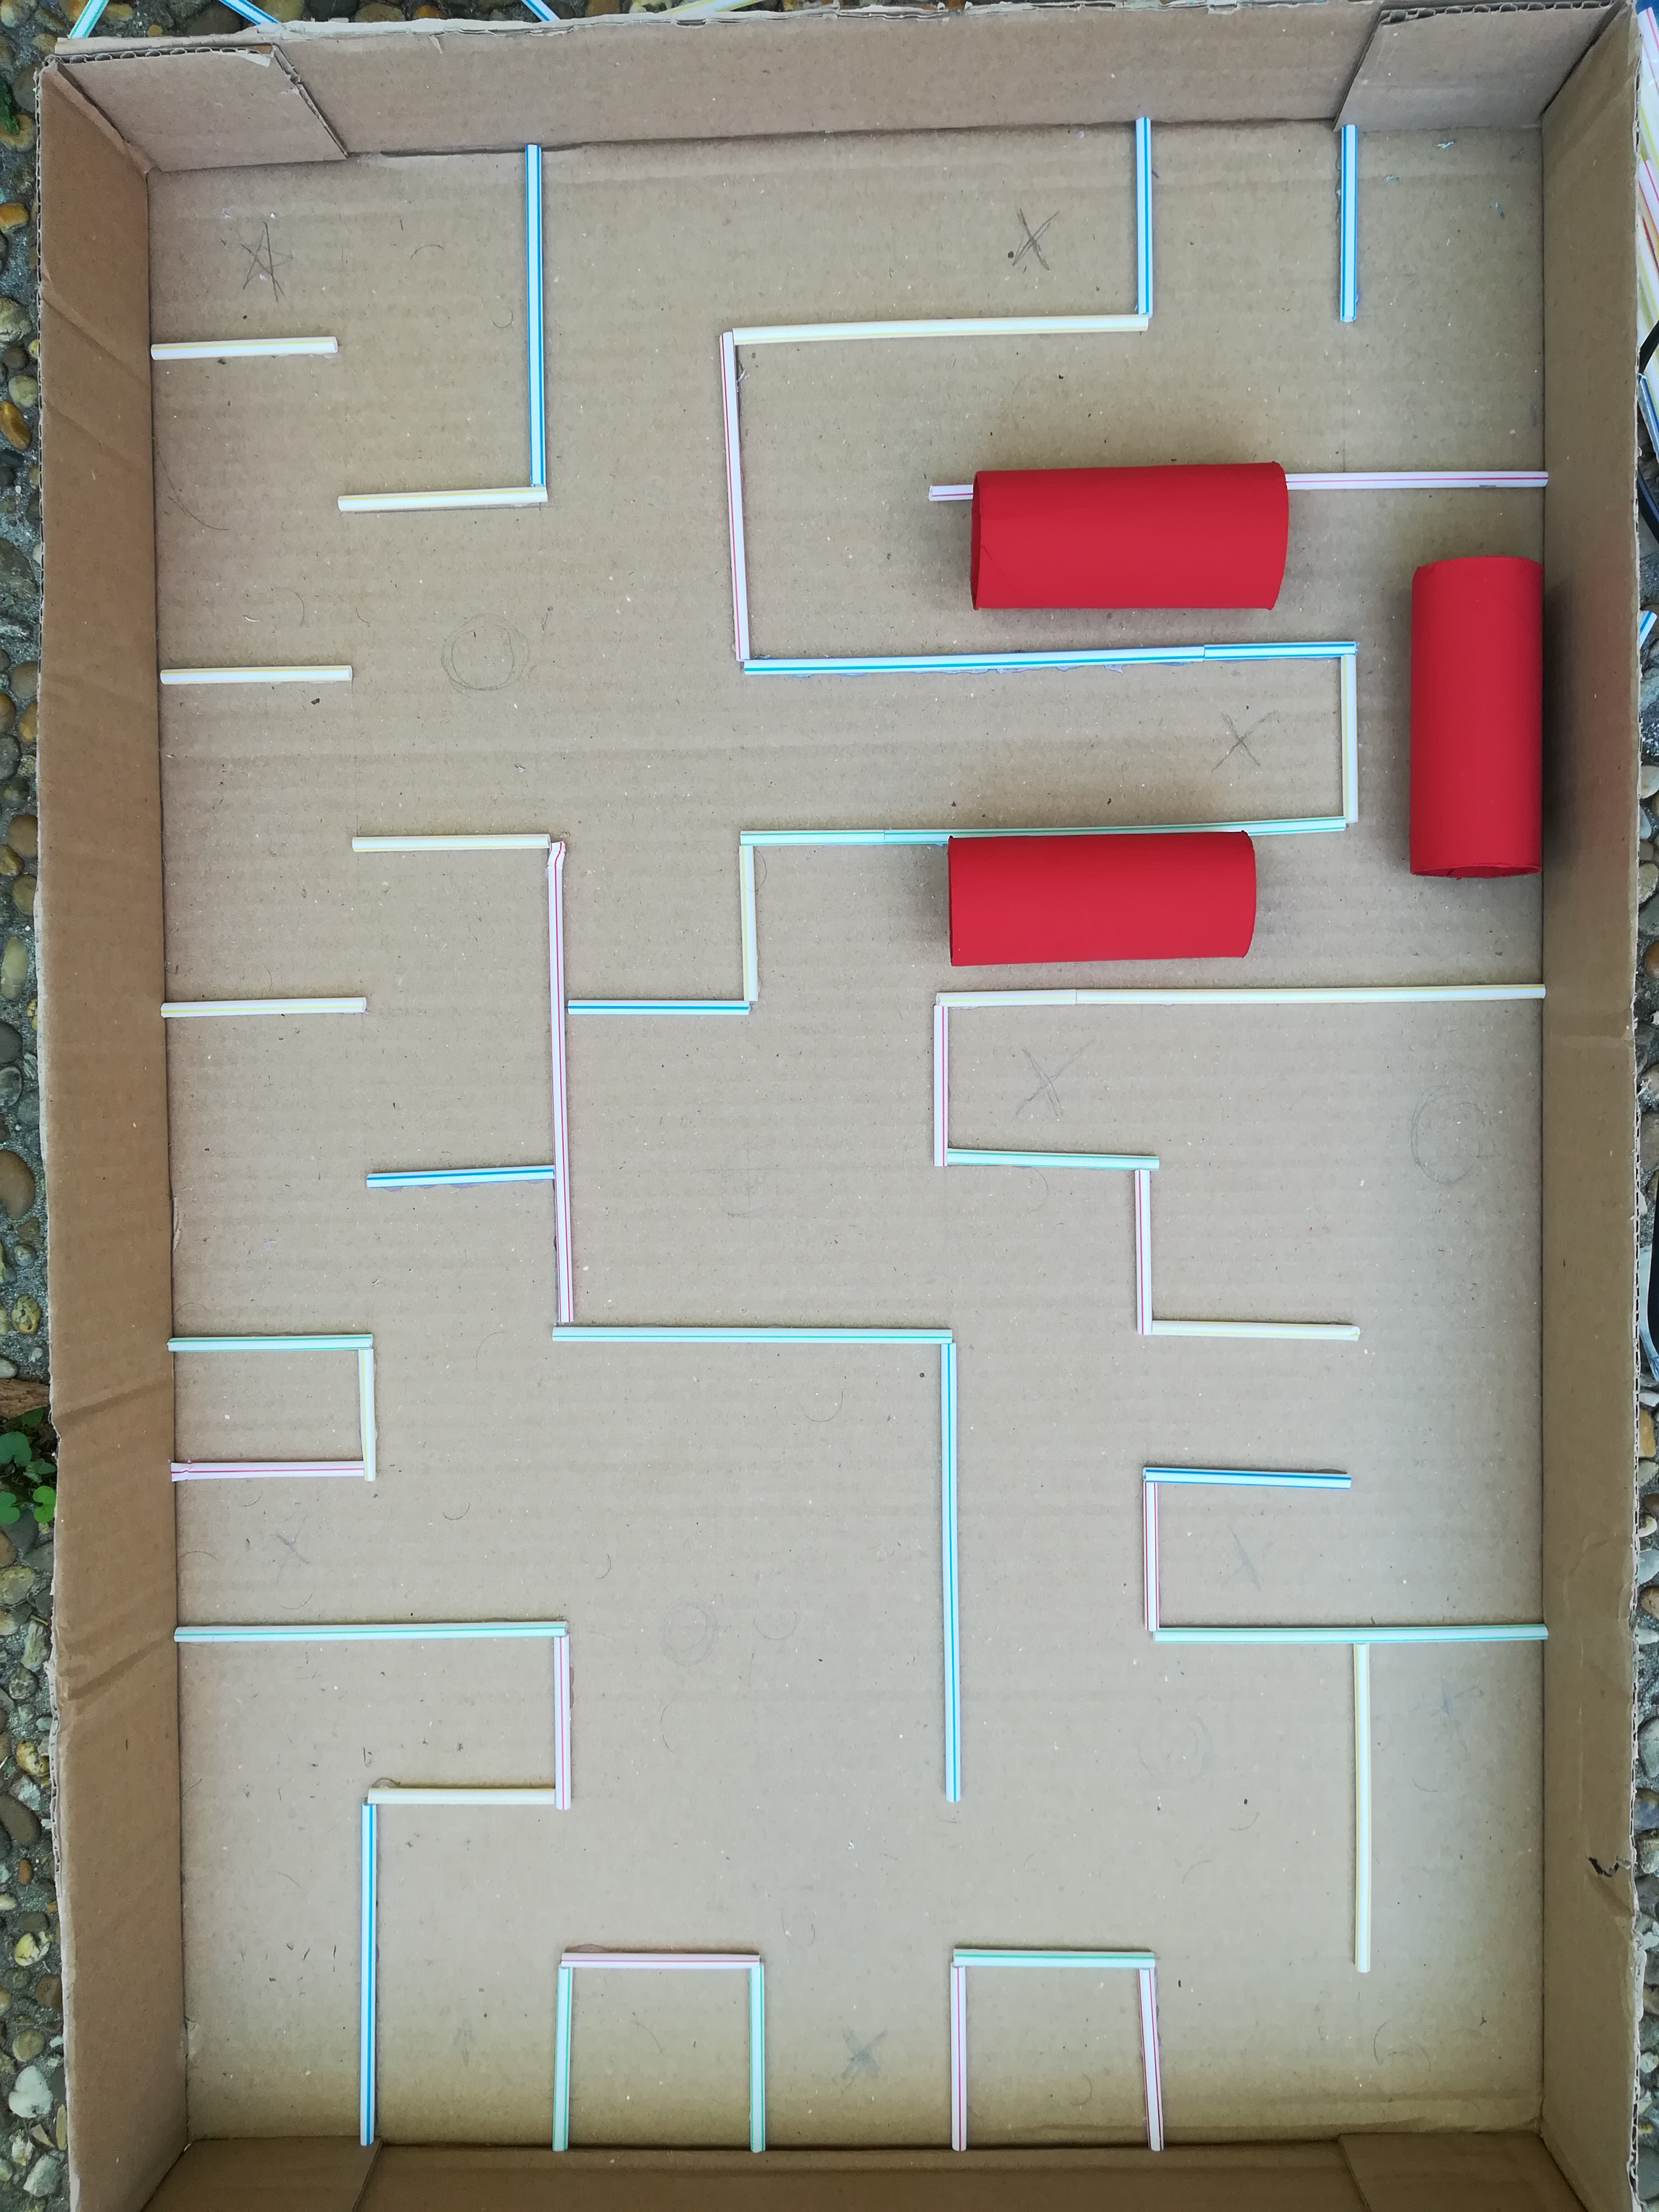 Comment fabriquer un labyrinthe géant avec un carton ? - Apprends